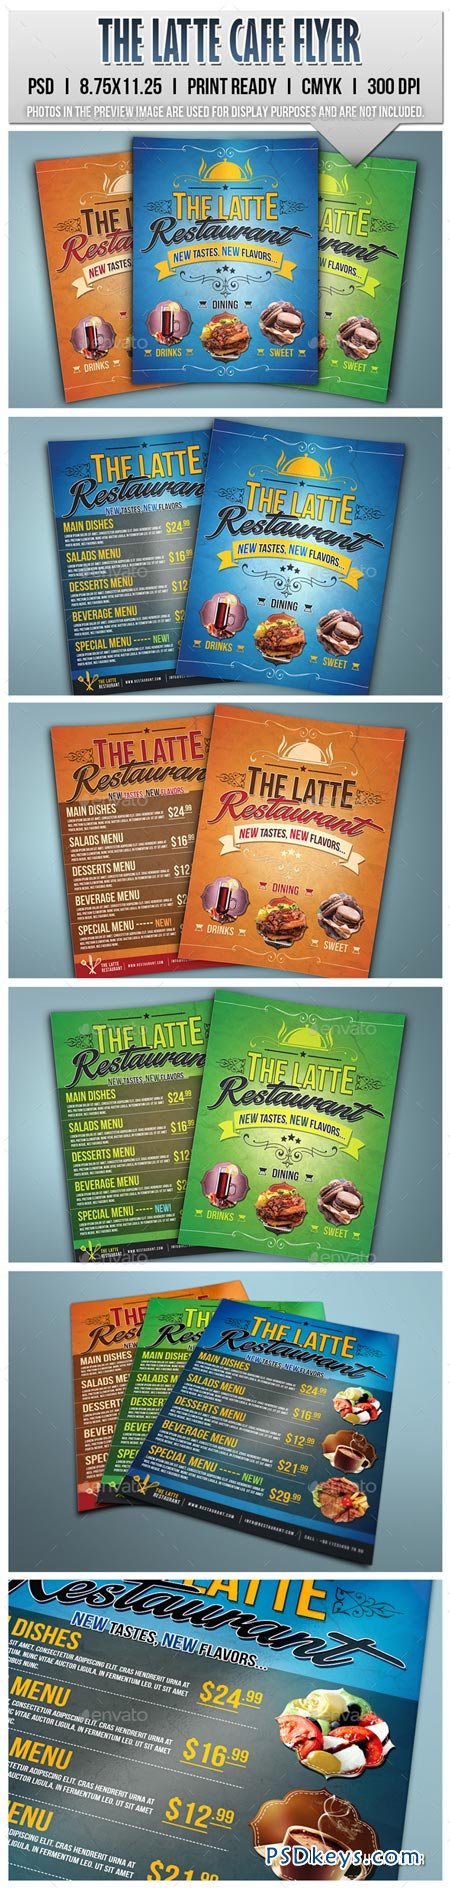 The Latte Cafe Flyer 8921647